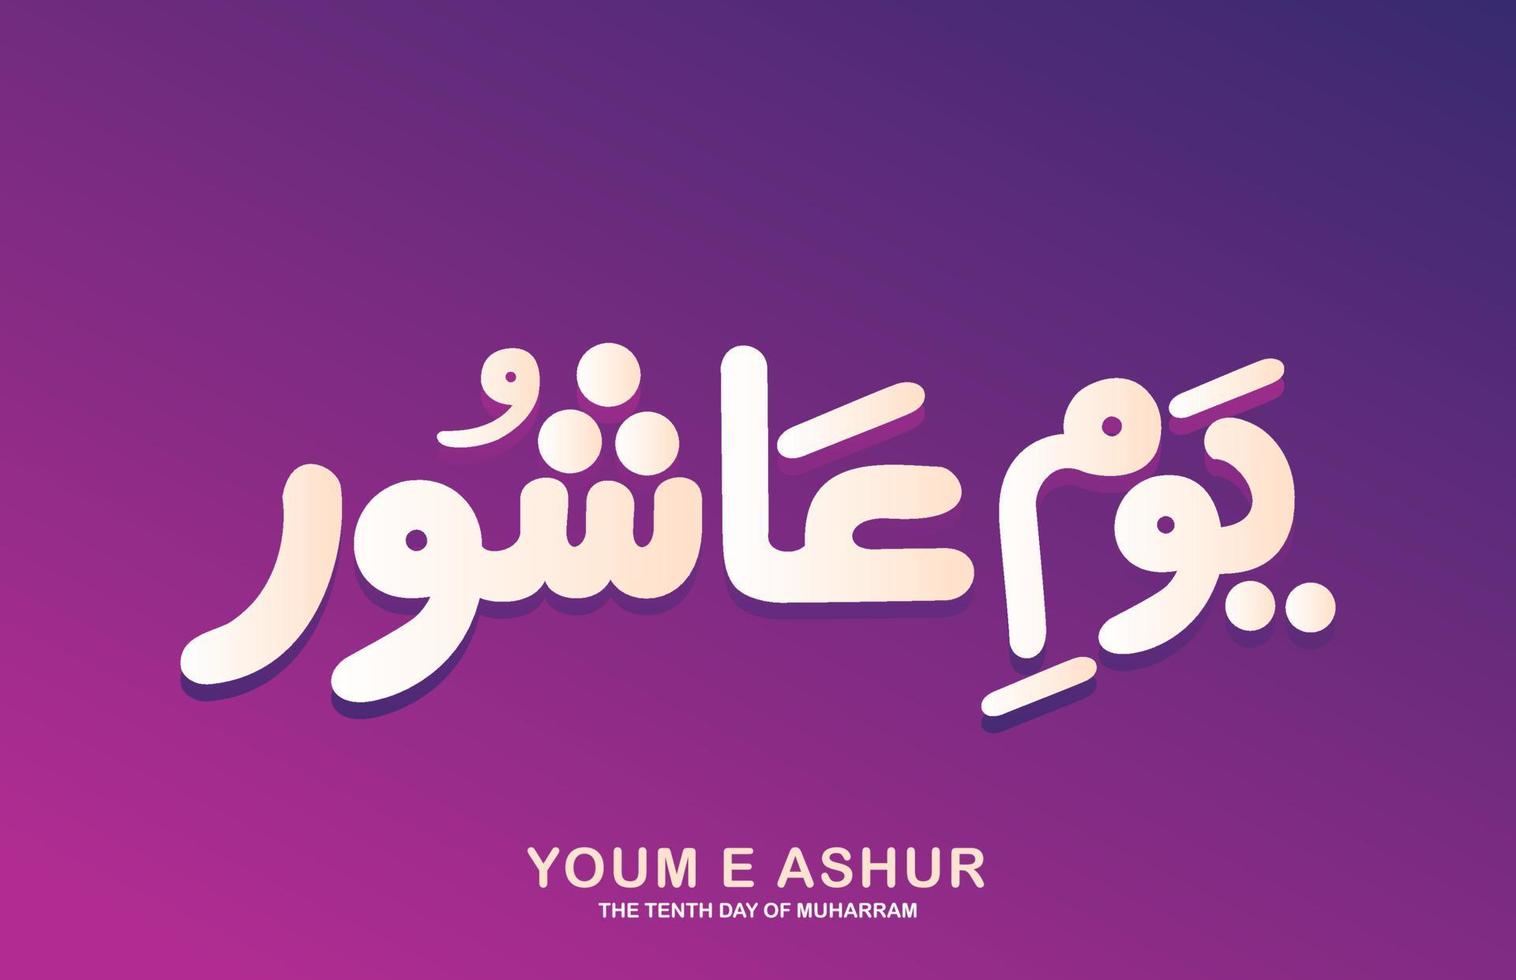 Arabische kalligrafie Ashura, de tiende dag van muharram, de eerste maand van de islamitische kalender. Ashura dag paars roze achtergrond vector